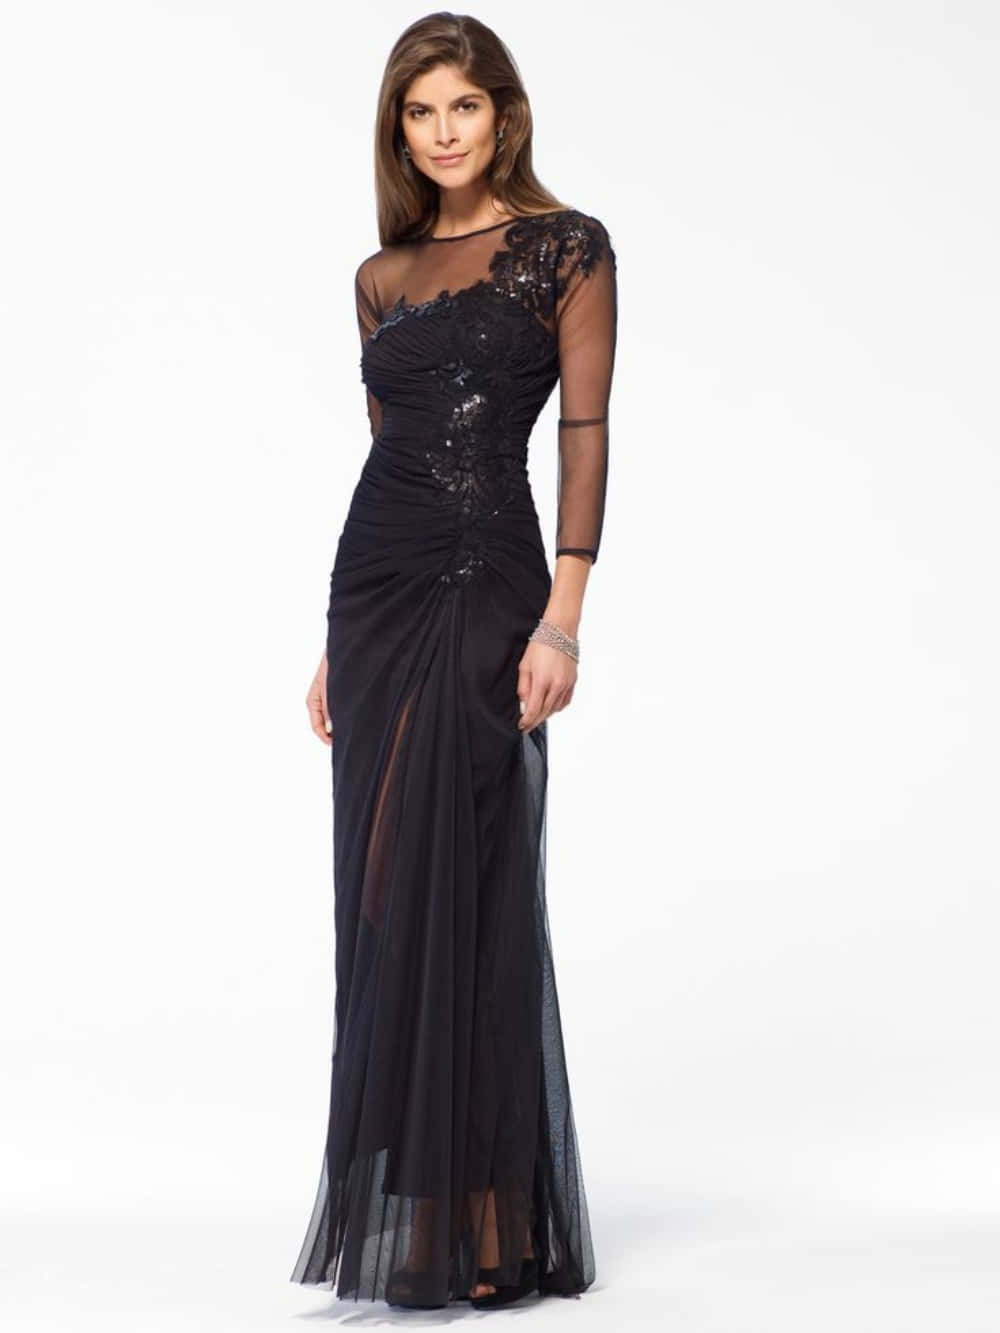 Luceimpresionante Con Un Vestido De Gala Negro. Fondo de pantalla